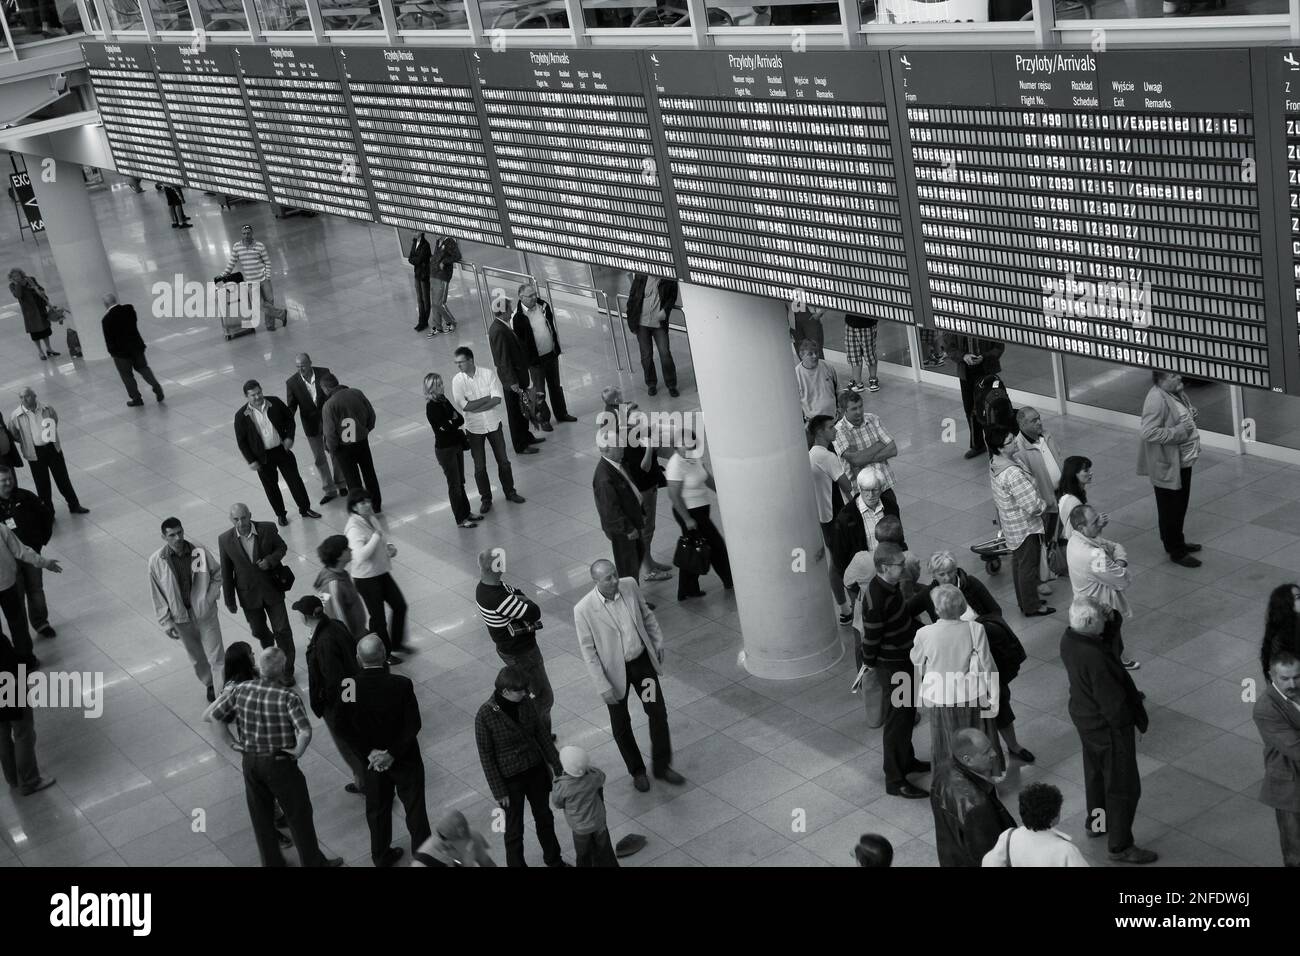 WARSCHAU, POLEN - 31. AUGUST 2010: Menschen warten im Ankunftsbereich des Warschauer Flughafens Chopin, Polen. Der Flughafen kündigte an, dass er im Oktober 2010 9 % habe Stockfoto